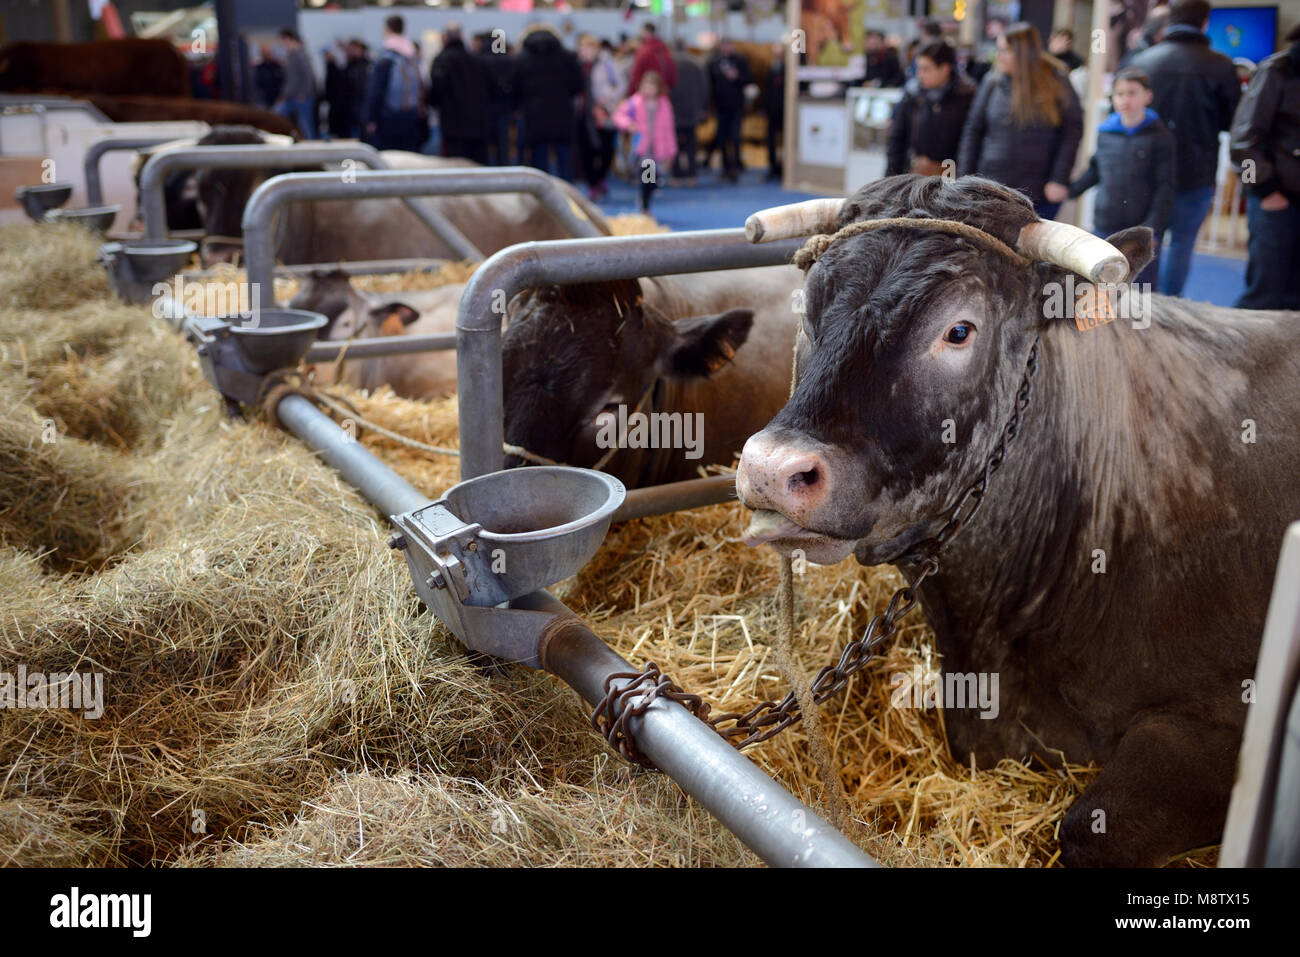 Bazadaise les bovins en enclos de bétail ou d'animaux Cale & visiteurs au Salon International de l'Agriculture de Paris aka Salon International de l'Agriculture Banque D'Images